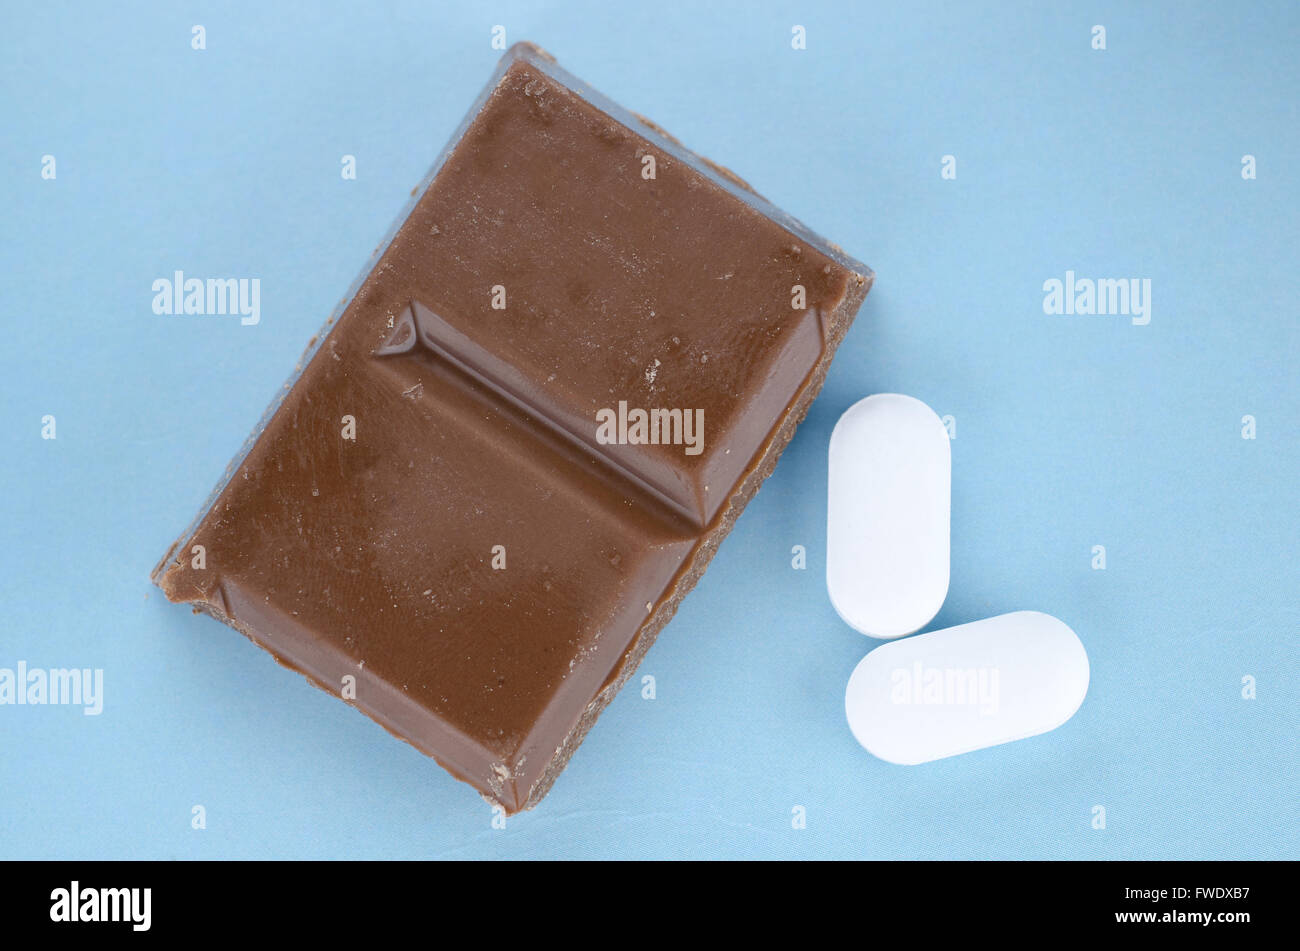 Schokolade-Trigger Migräne Kopfschmerzen Konzept mit Stück Schokolade und zwei Schmerzmittel Tabletten Stockfoto